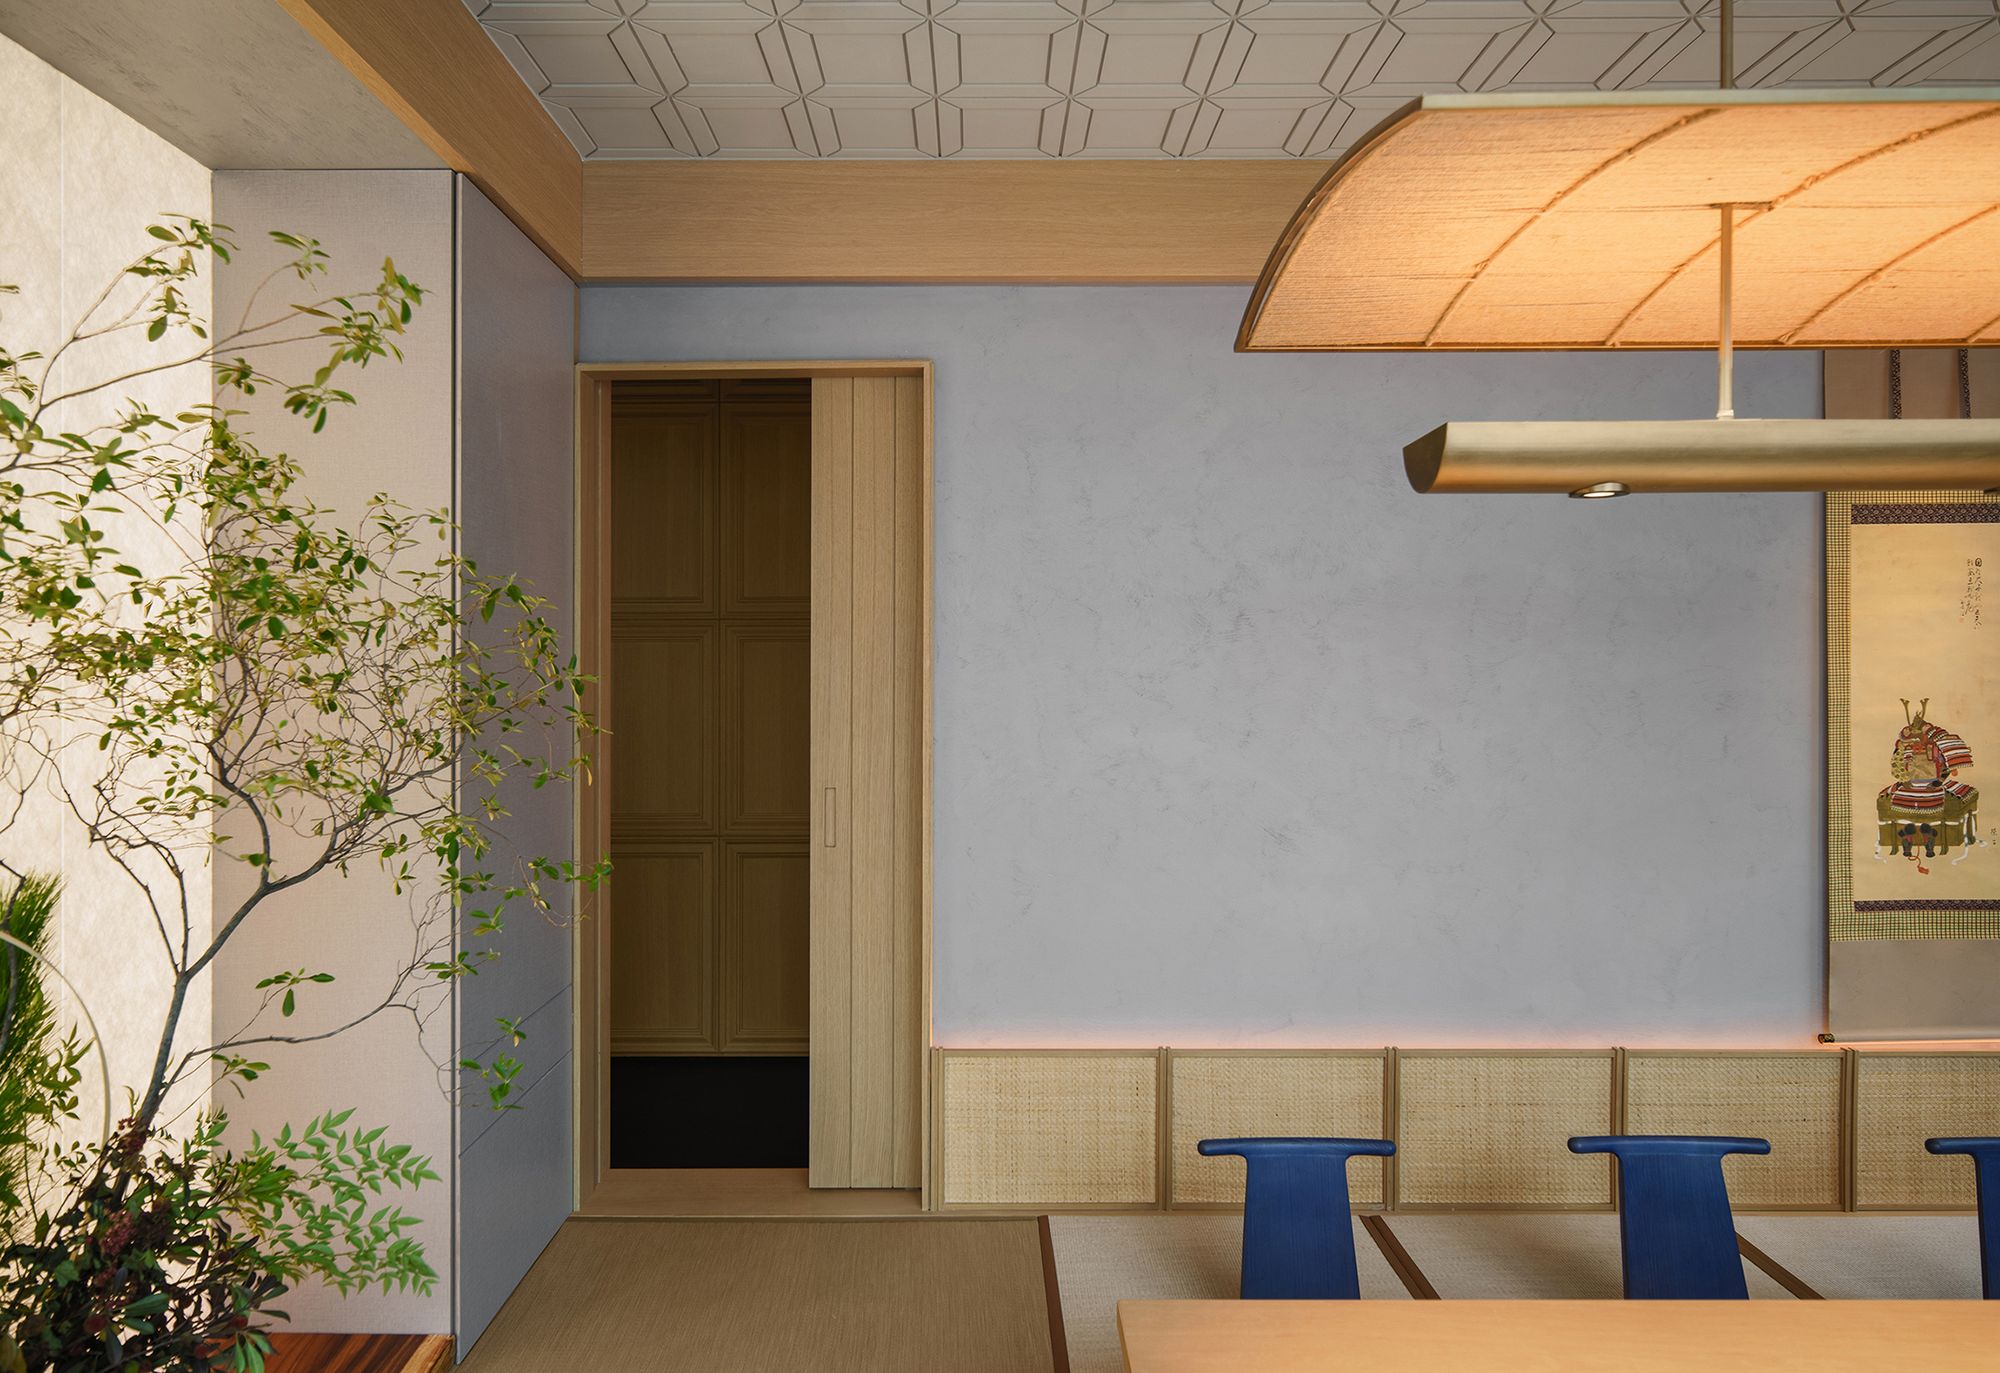 图片[9]|Aumann日本料理餐厅|ART-Arrakis | 建筑室内设计的创新与灵感